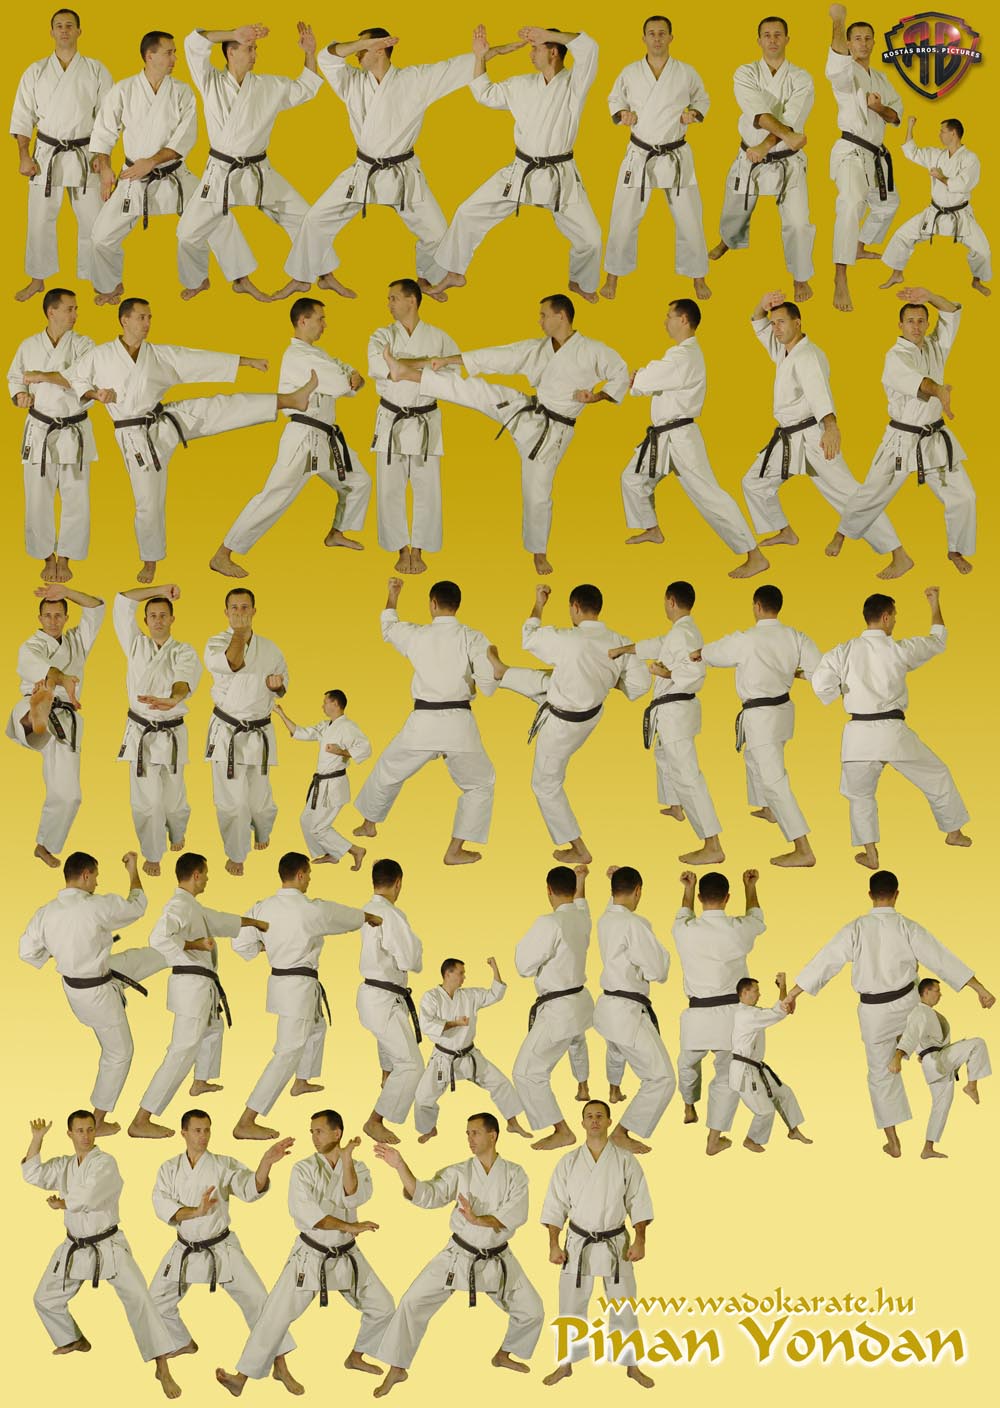 PinanYondan.jpg 1 000 × 1 408 pixlar | Karate kata, Wado ryu karate